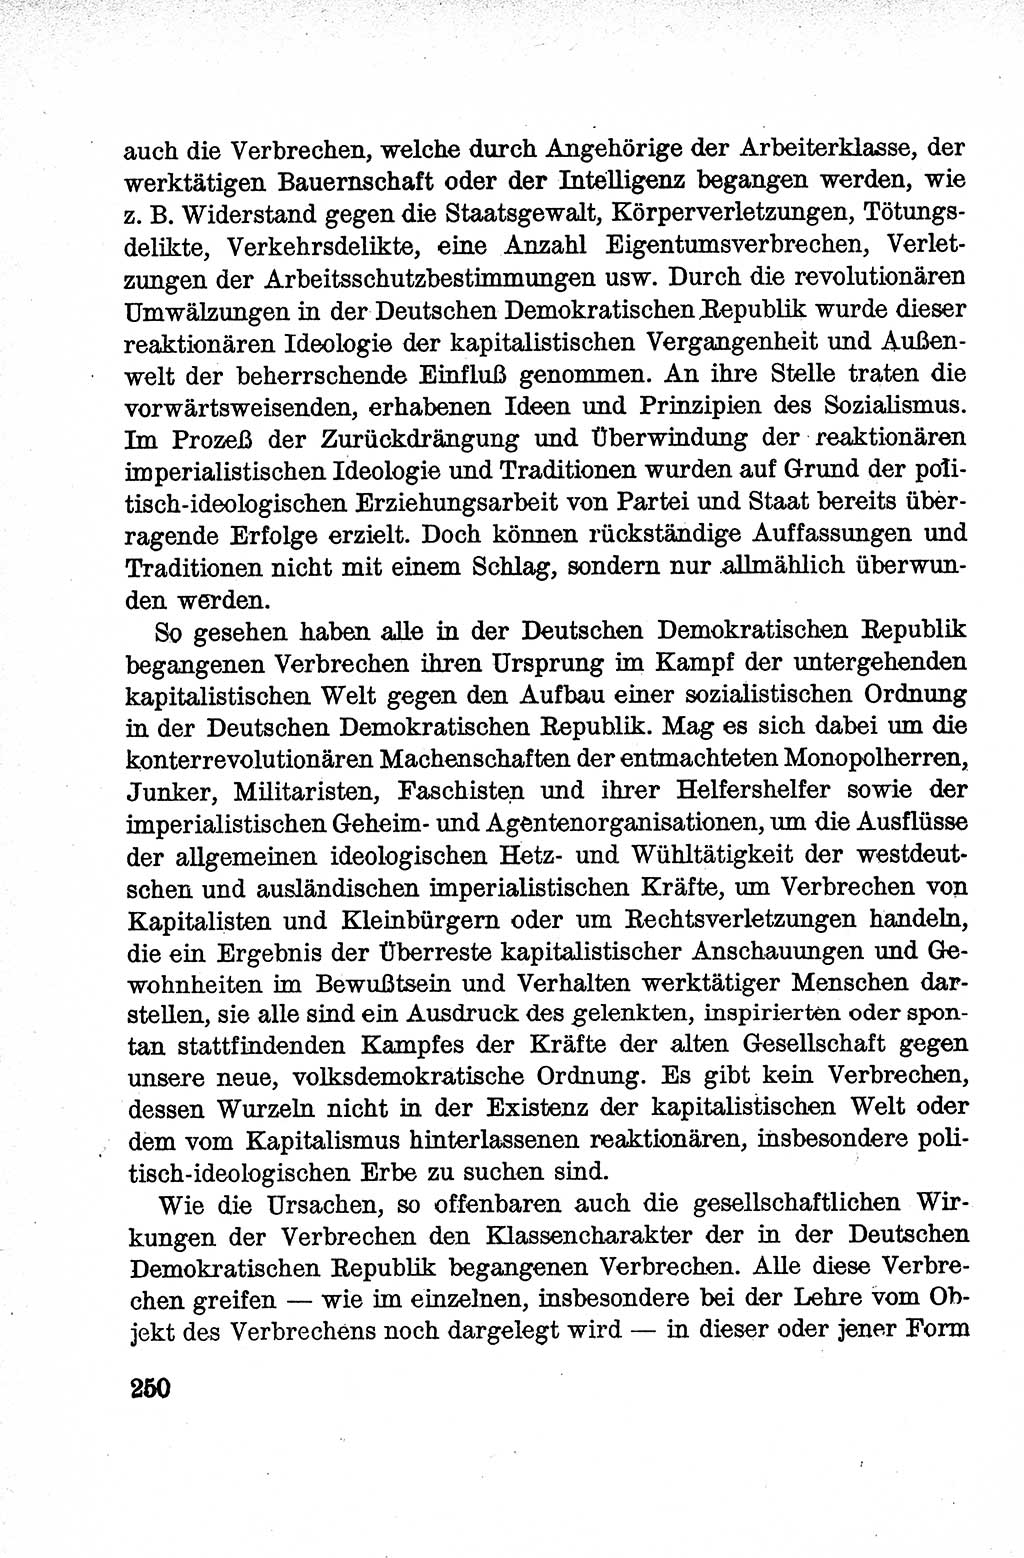 Lehrbuch des Strafrechts der Deutschen Demokratischen Republik (DDR), Allgemeiner Teil 1959, Seite 250 (Lb. Strafr. DDR AT 1959, S. 250)